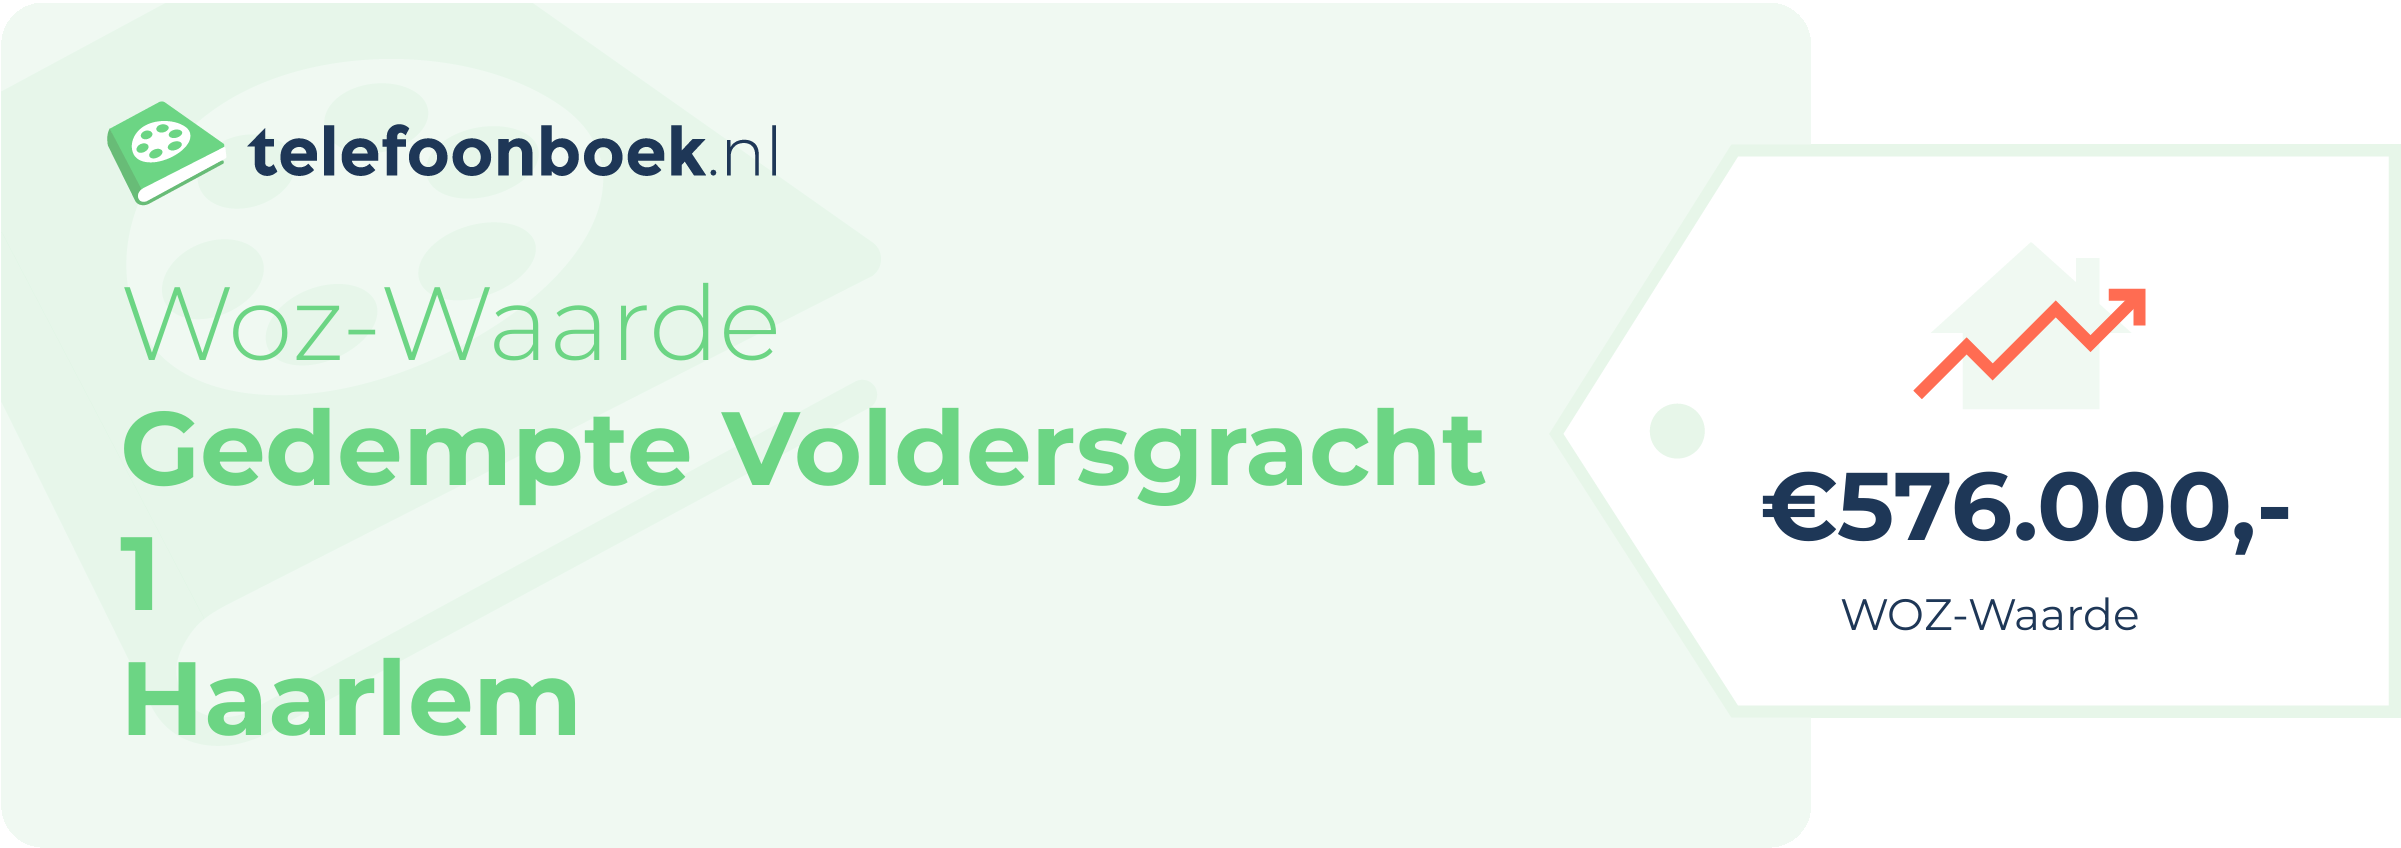 WOZ-waarde Gedempte Voldersgracht 1 Haarlem